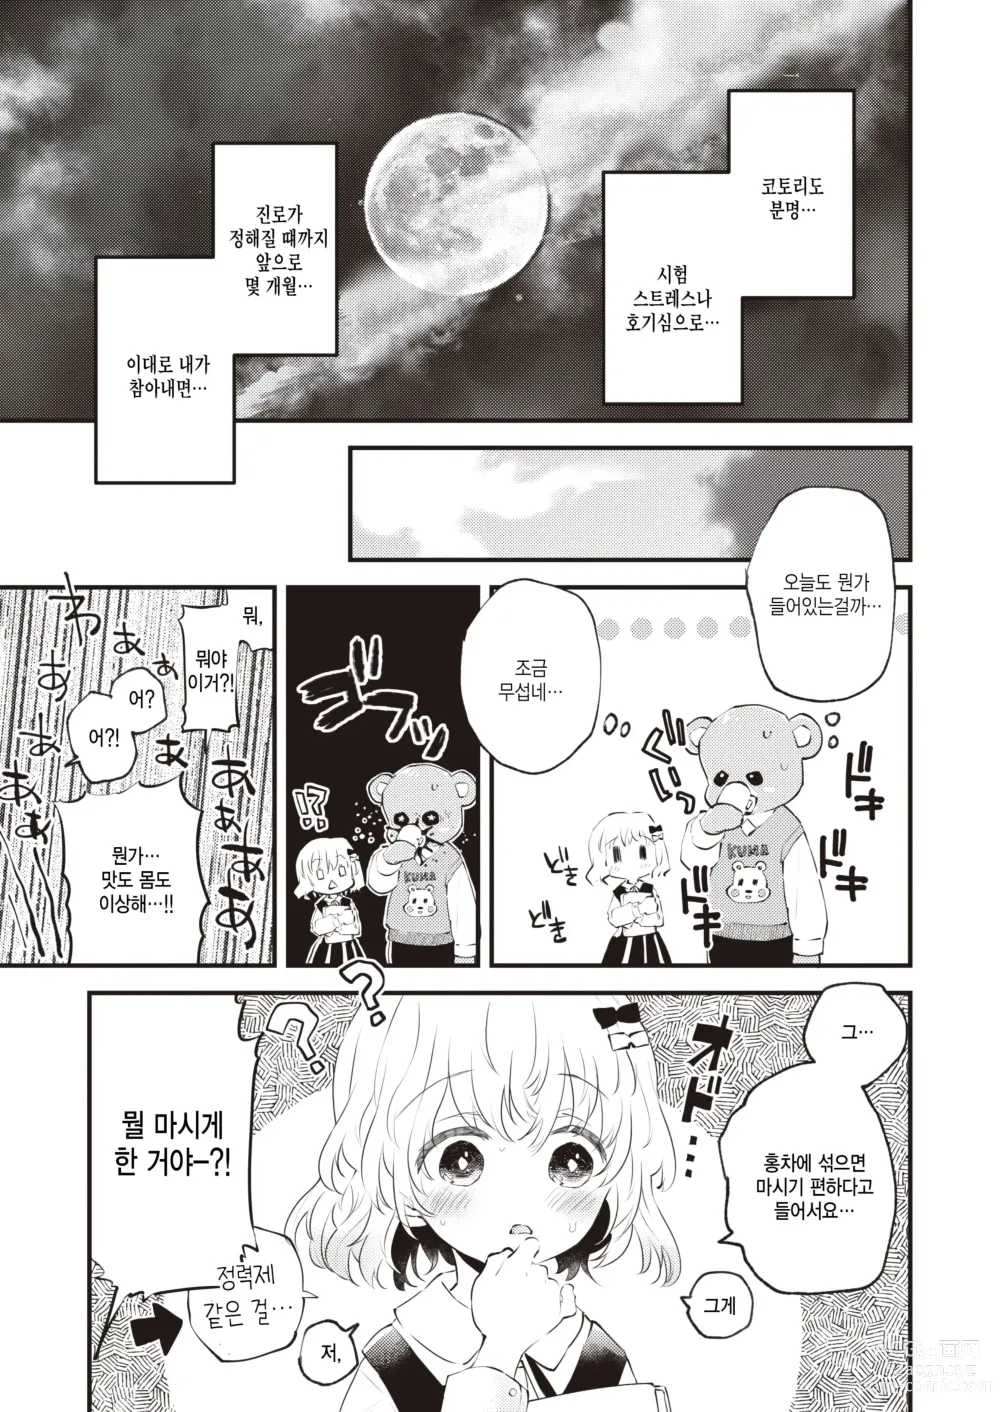 Page 5 of manga Kedamono Michi